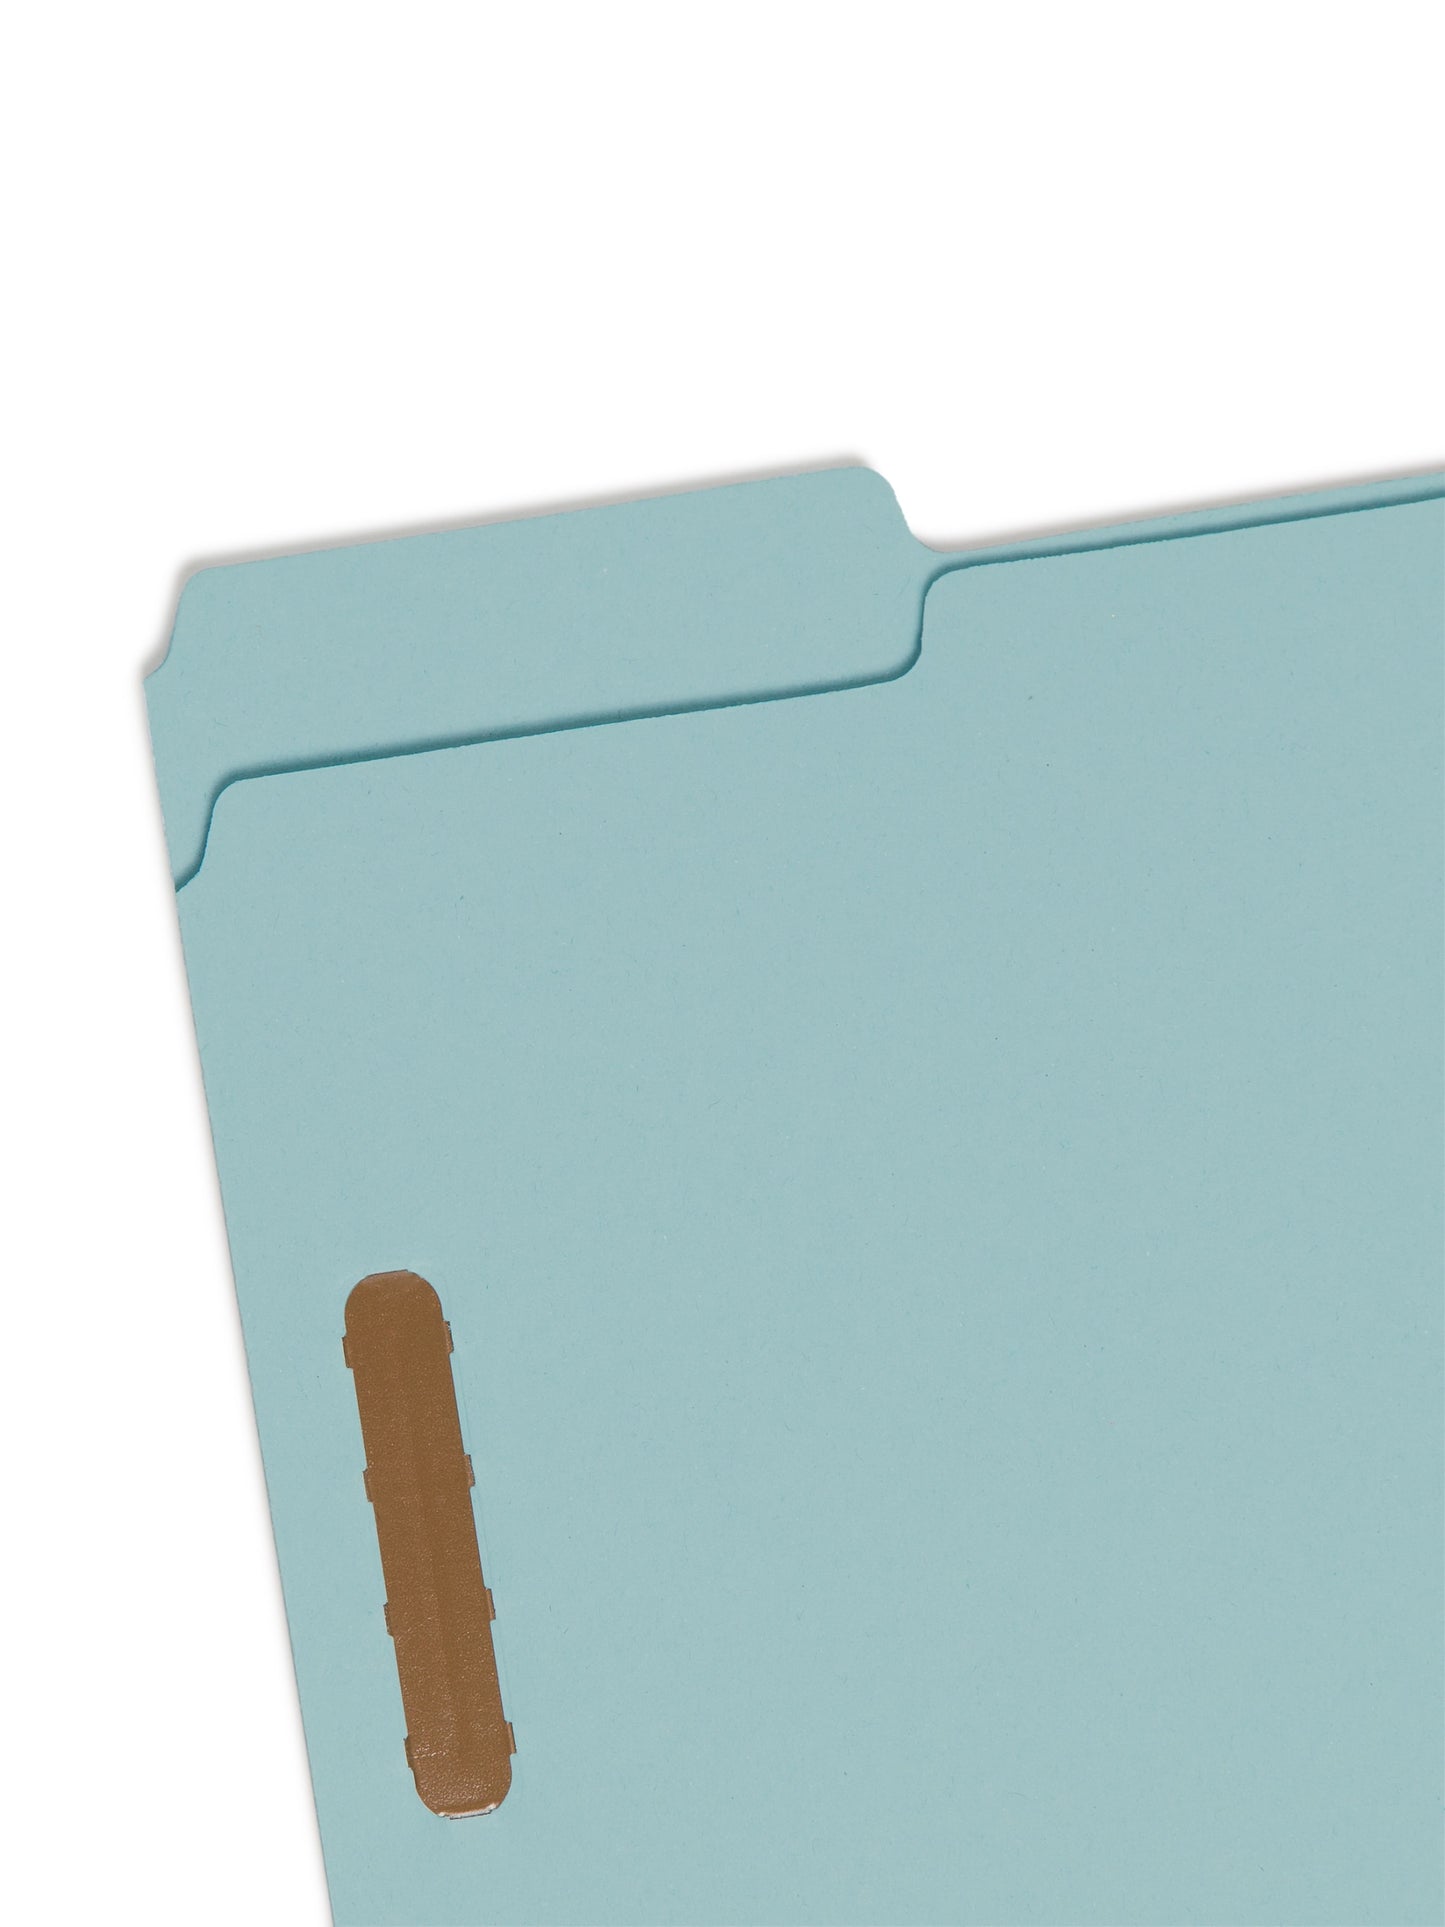 Pressboard Fastener File Folders, 1 inch Expansion, Blue Color, Letter Size, 